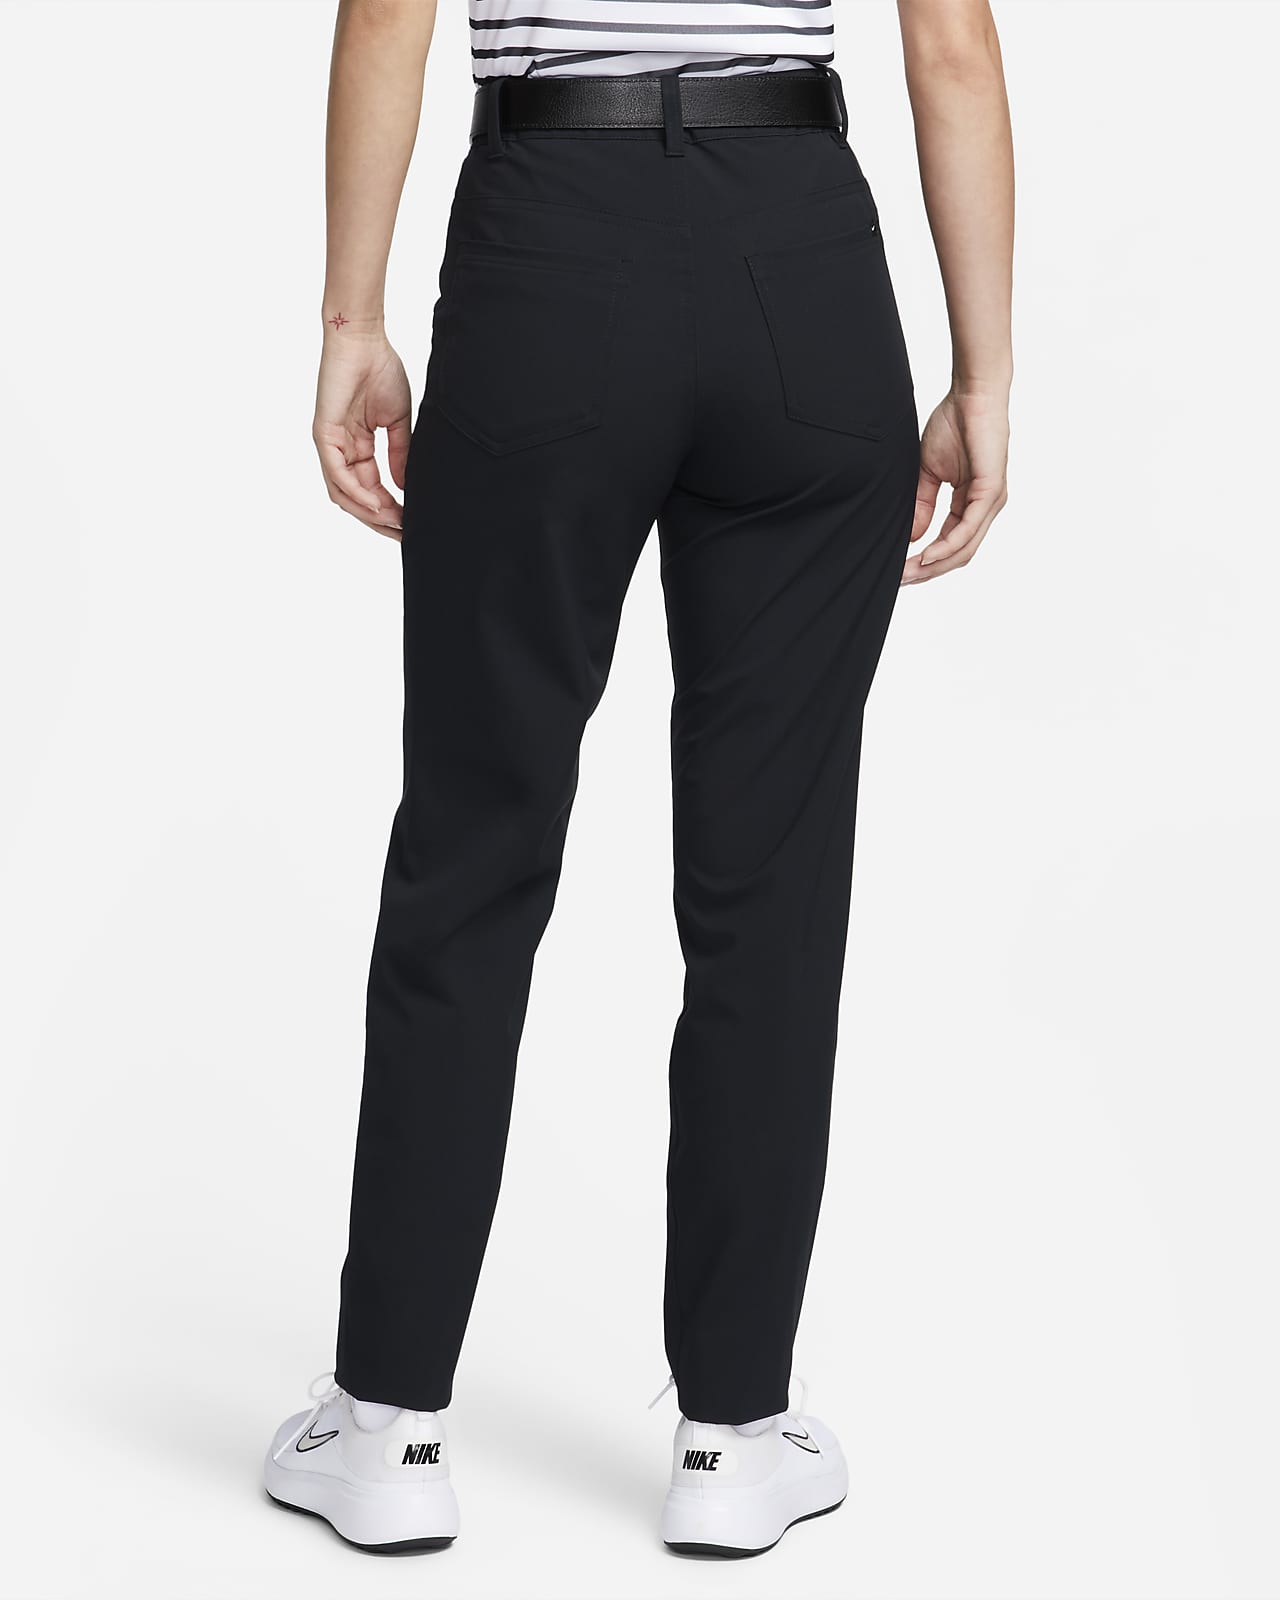 Nike Golf Repel Dri-FIT 5 pocket pants in black